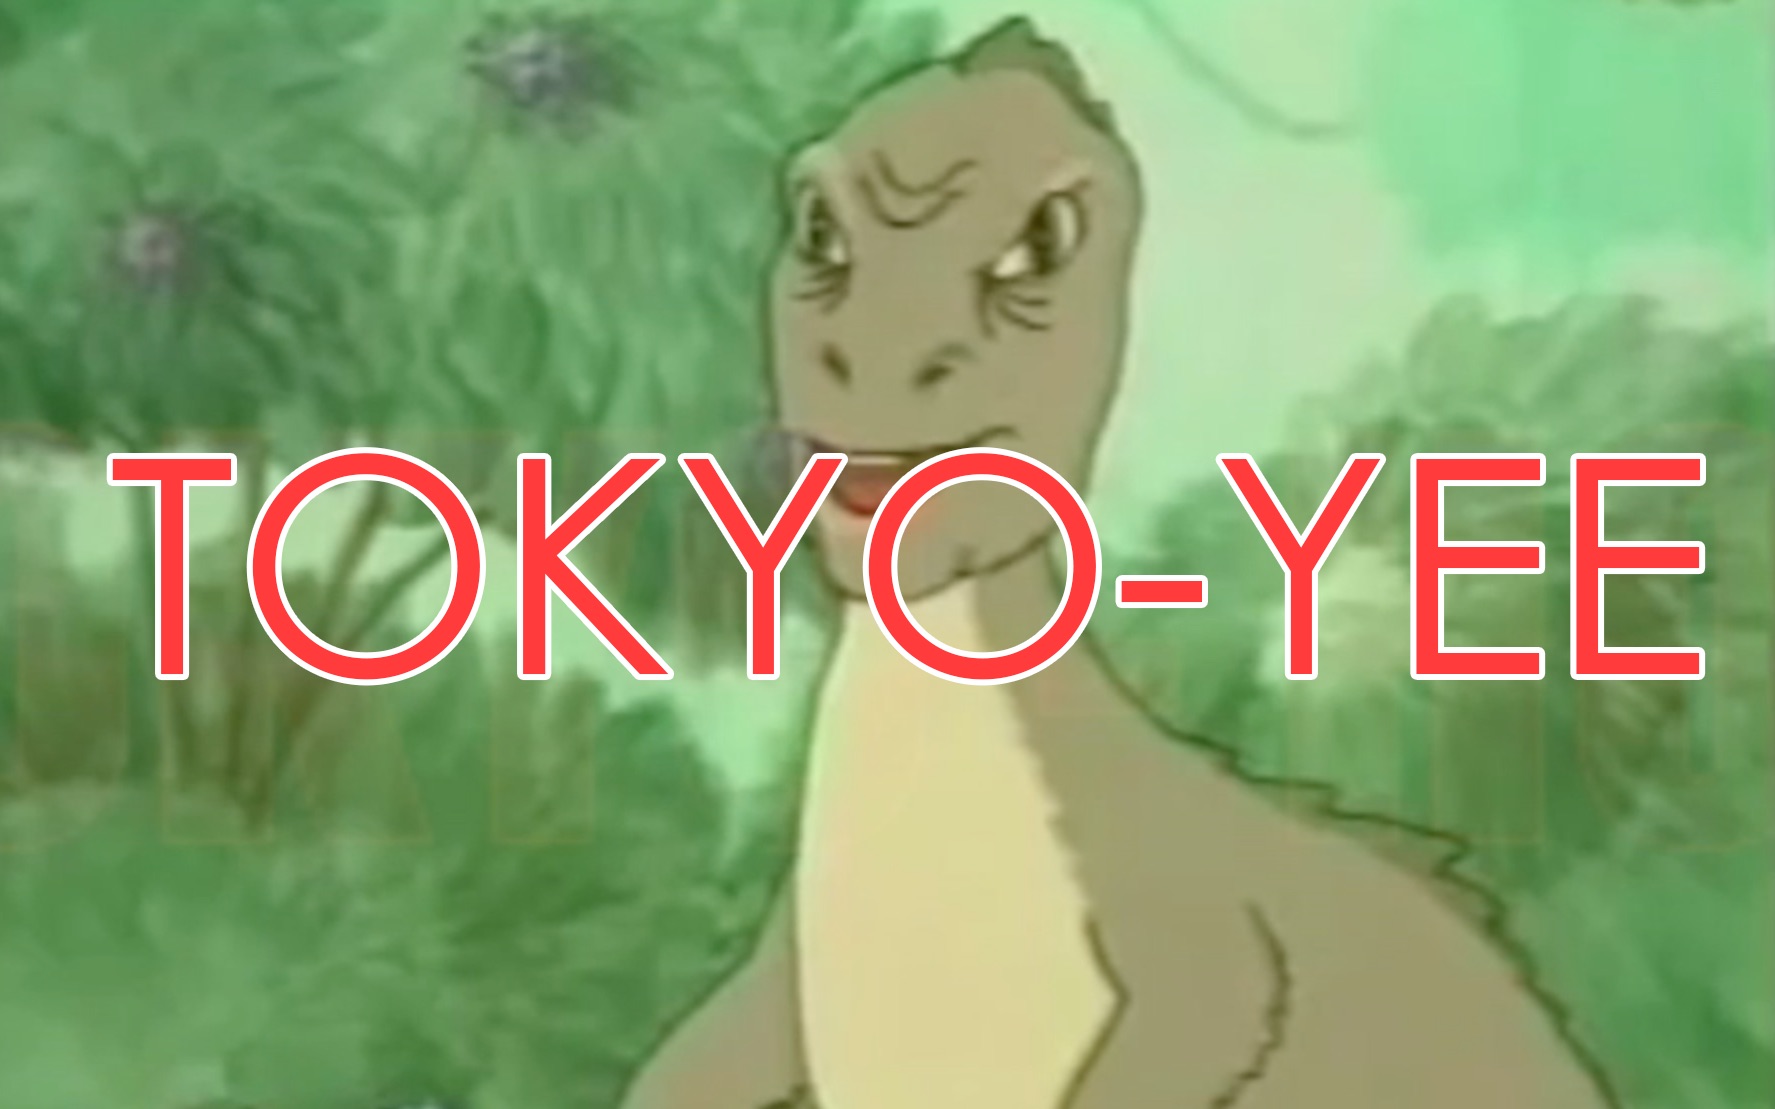 恐龙yee图片 动画图片